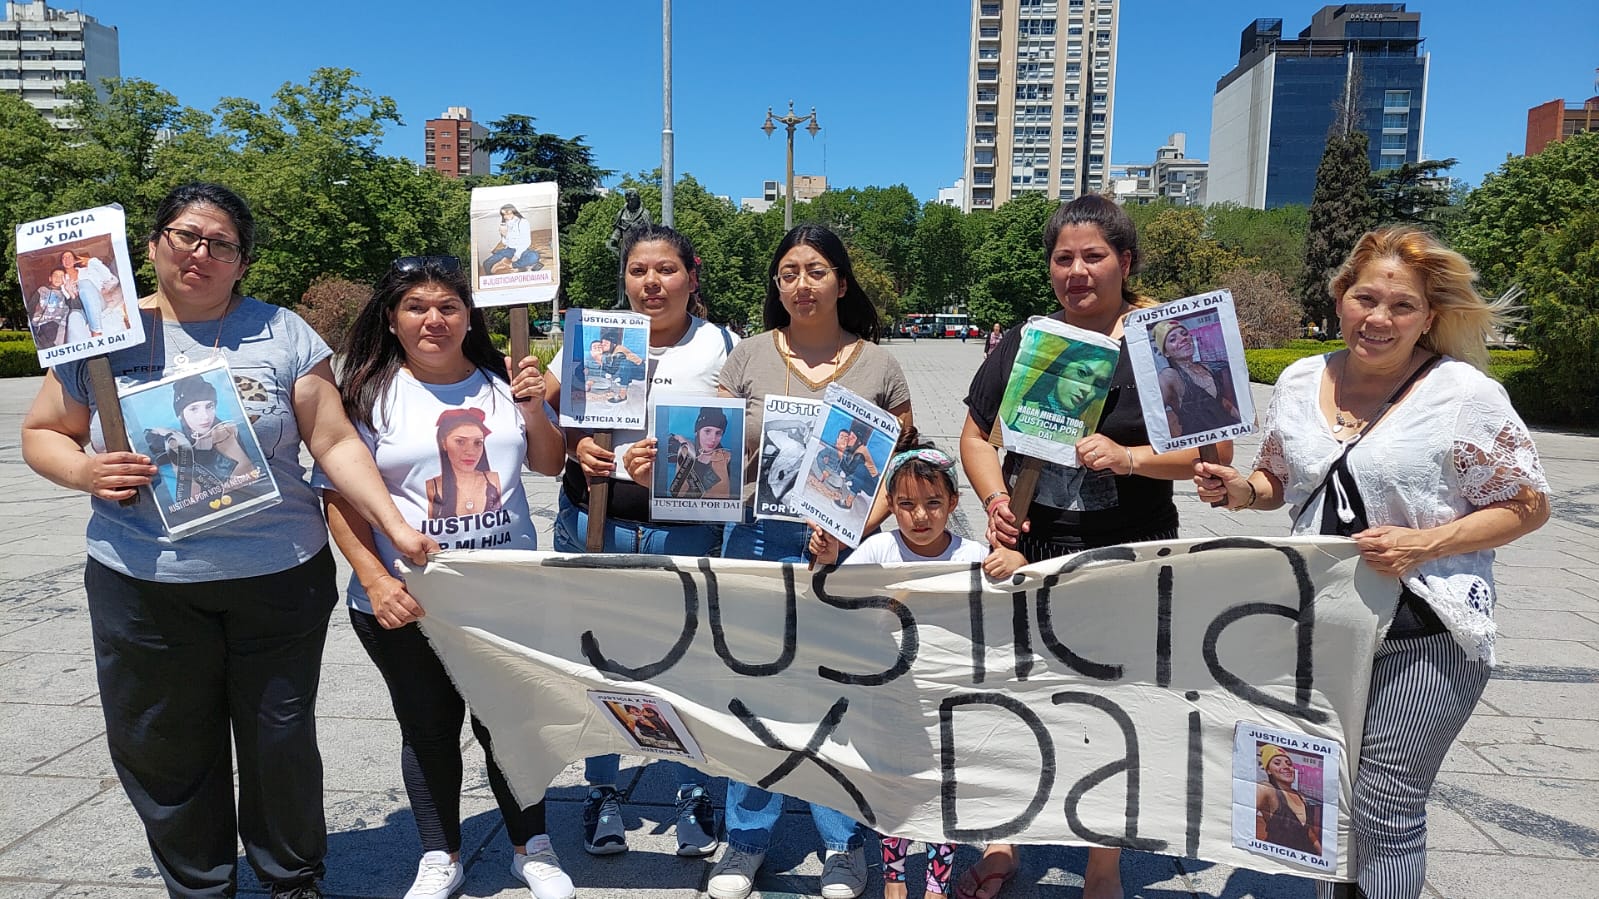 FAMILIARES DE DAIANA ABREGU RECLAMAN JUSTICIA POR SU FEMICIDIO